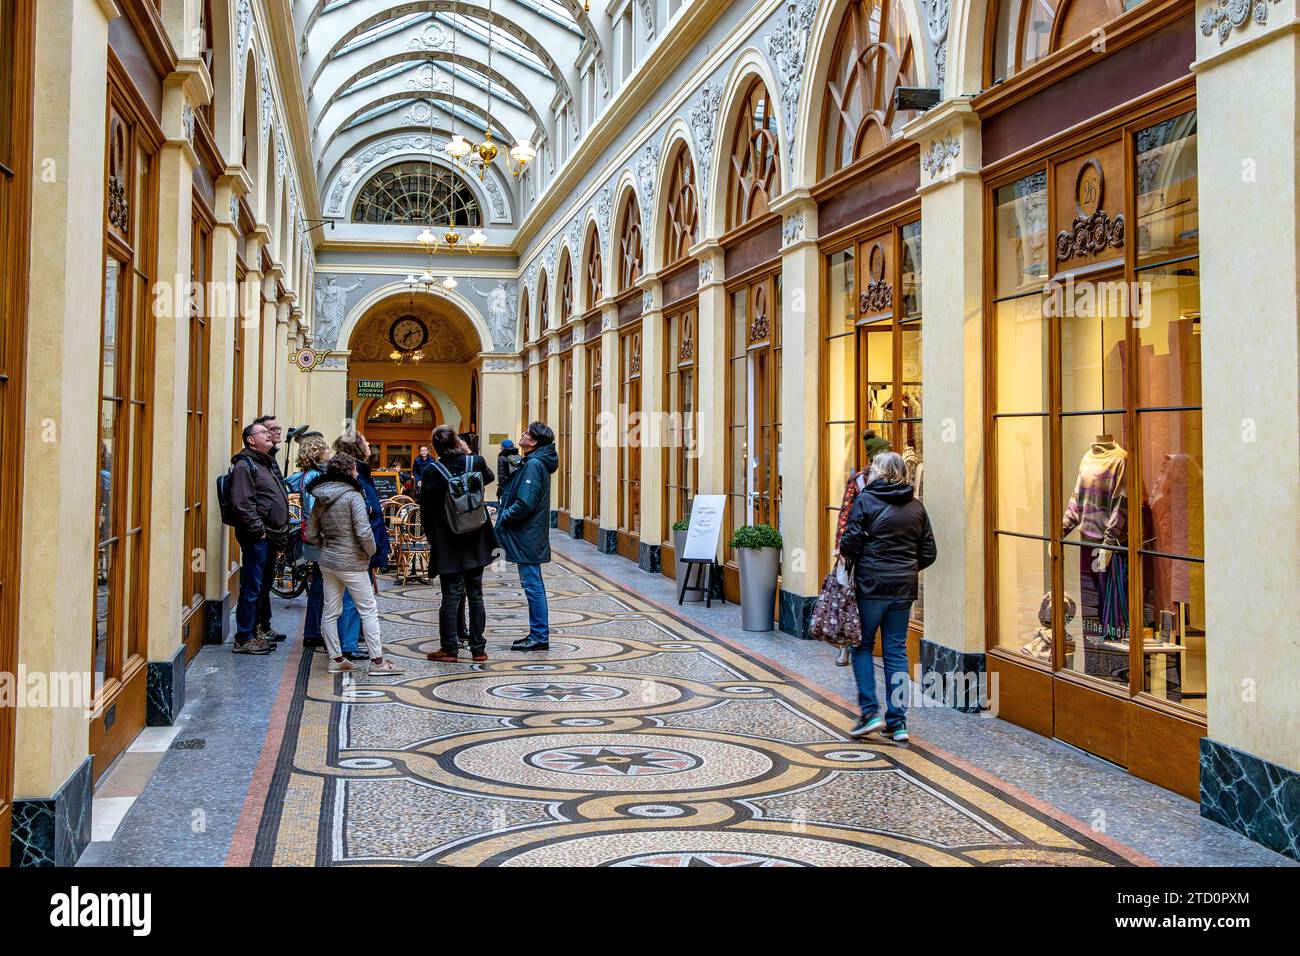 Les gens marchent dans la Galerie Vivienne, une belle galerie marchande couverte construite en 1823 située dans le 2e arrondissement de Paris, en France Banque D'Images